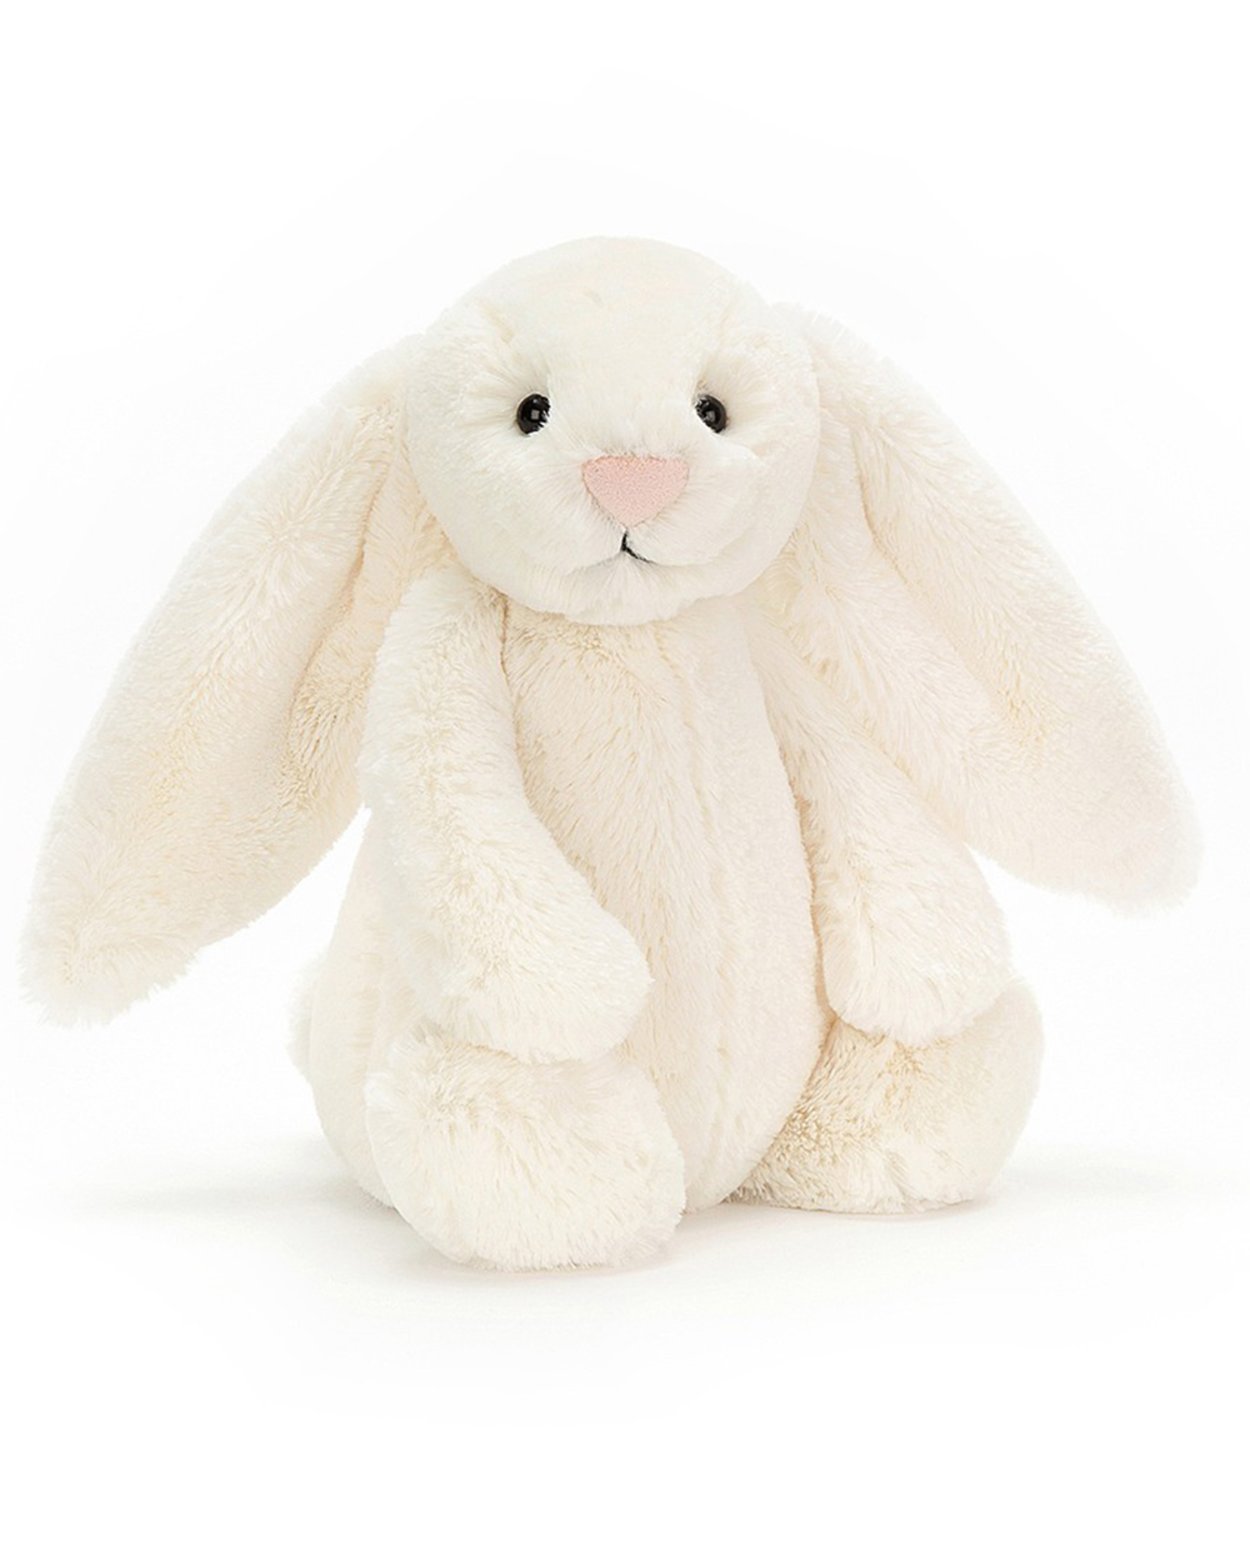 Bashful Bunny in Cream - Medium